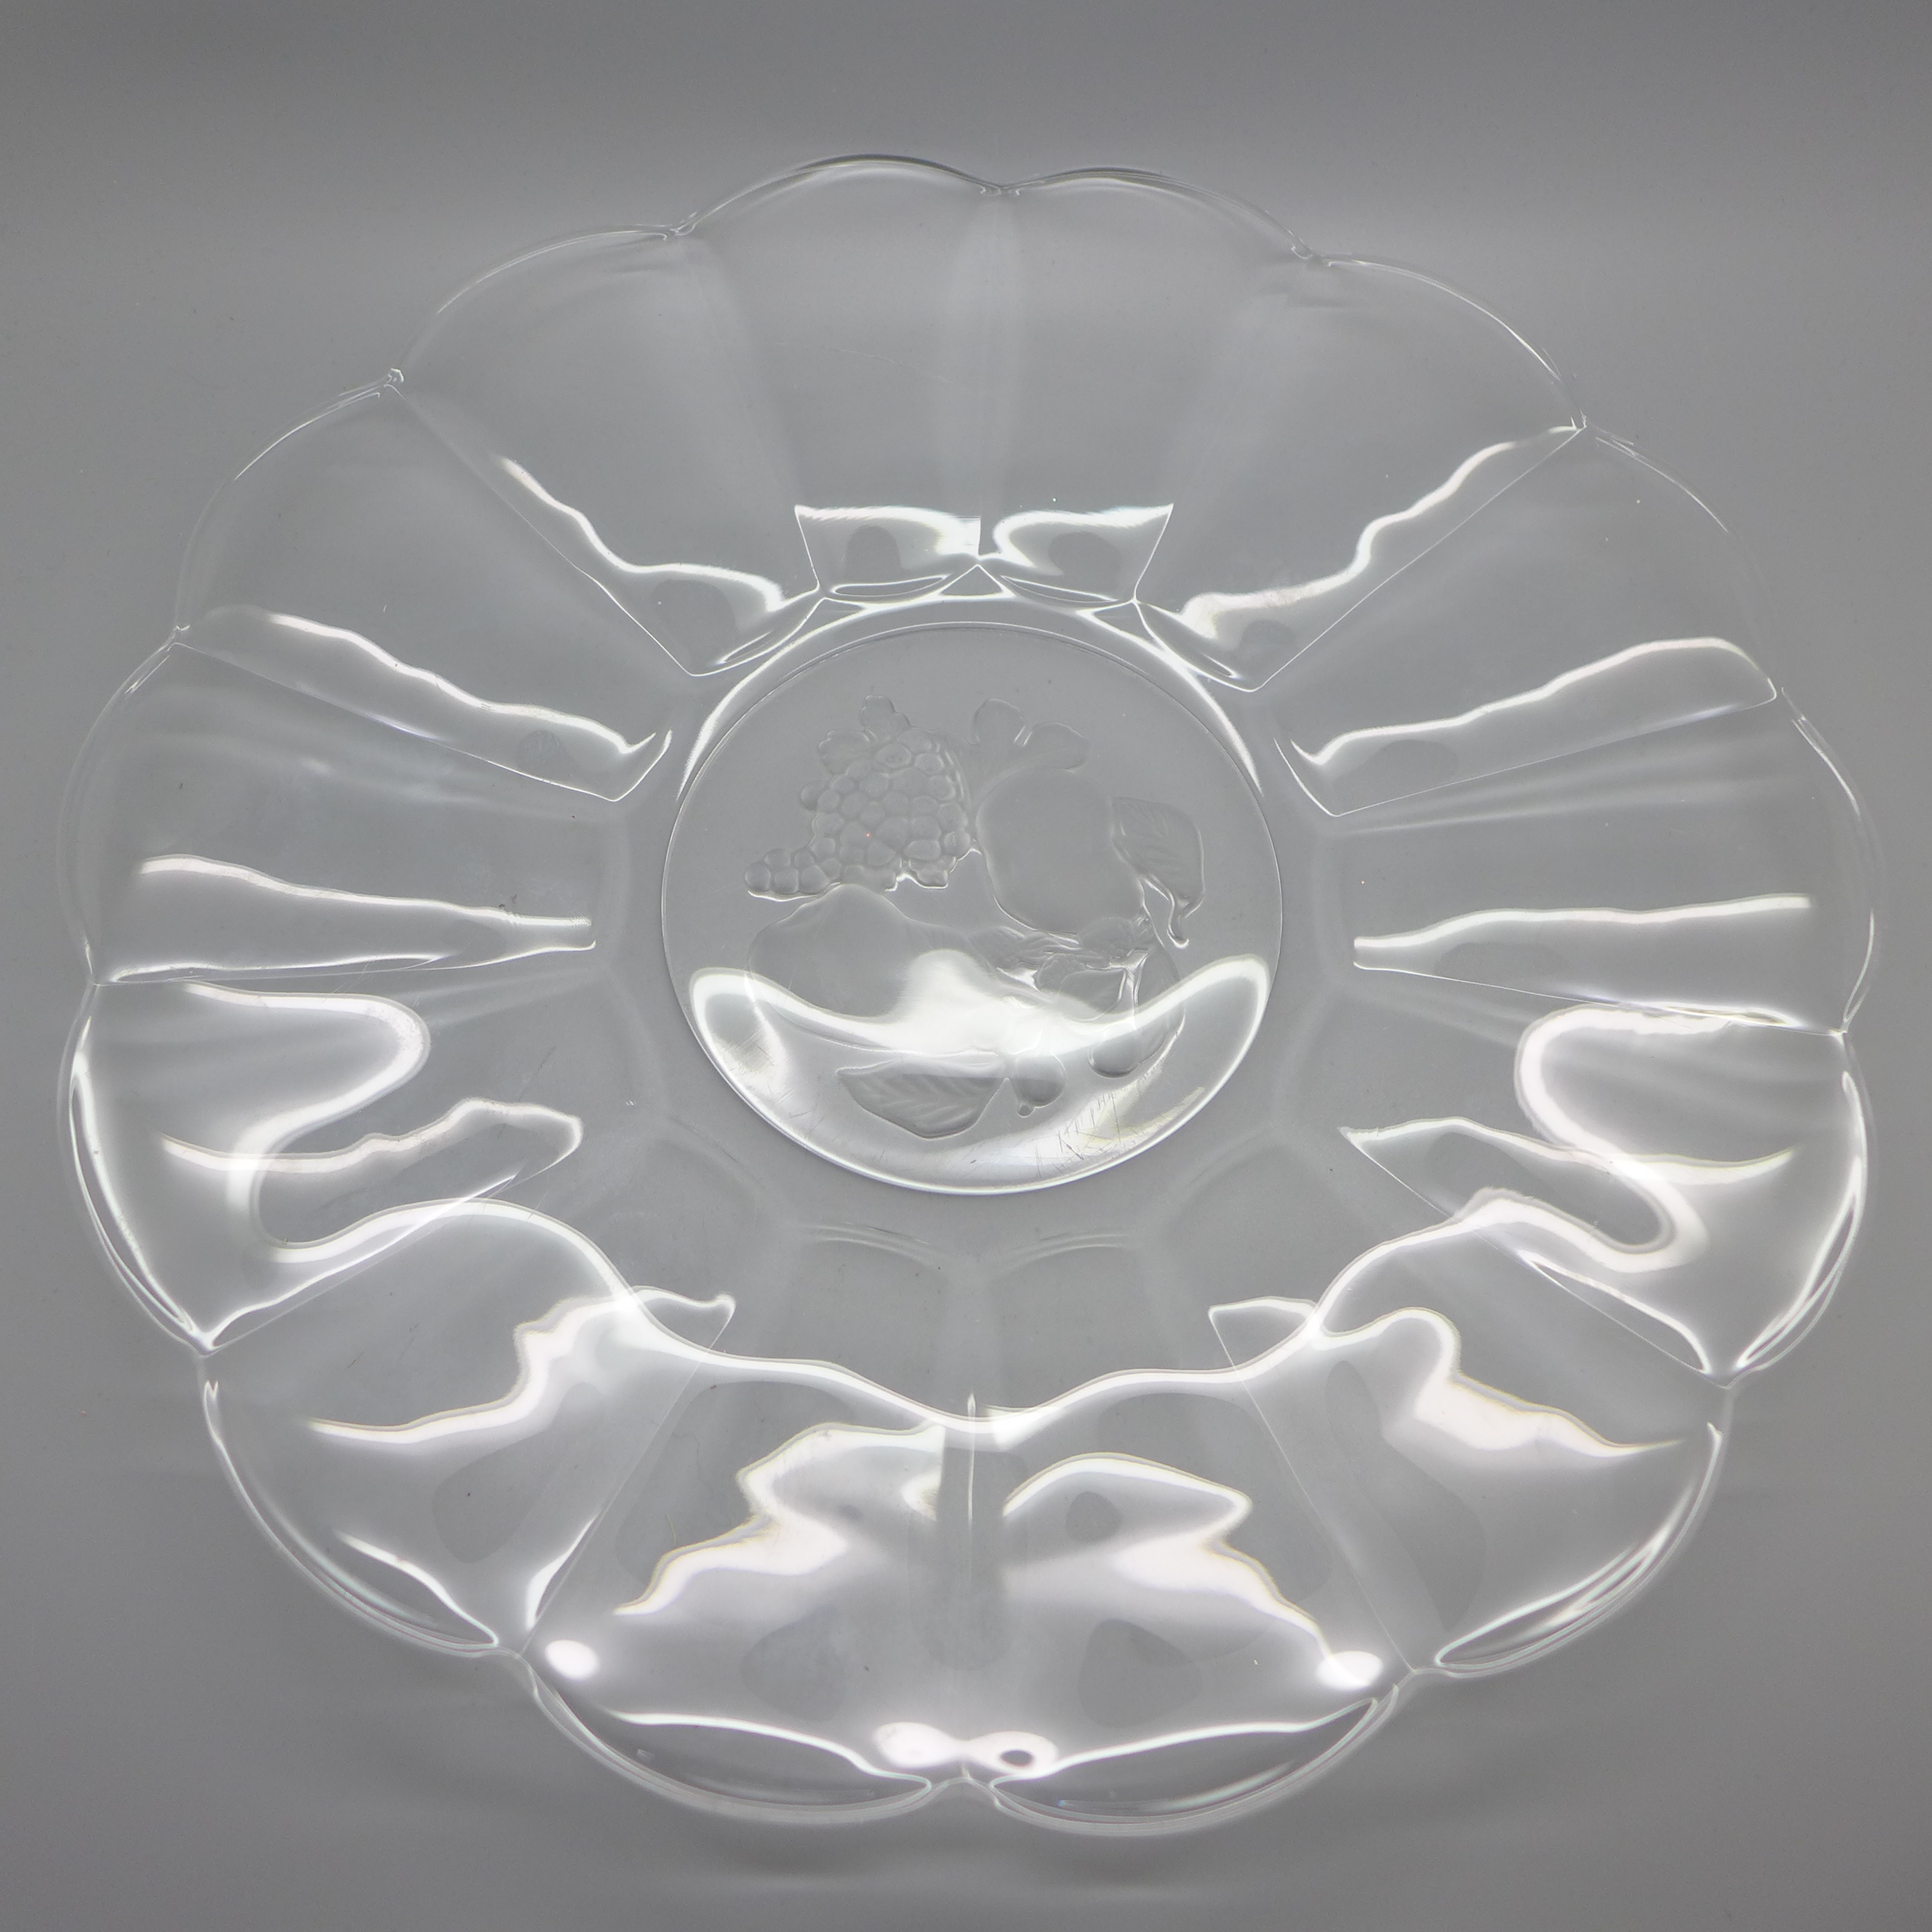 A Val Saint Lambert 'MVSL' Belgium glass plate